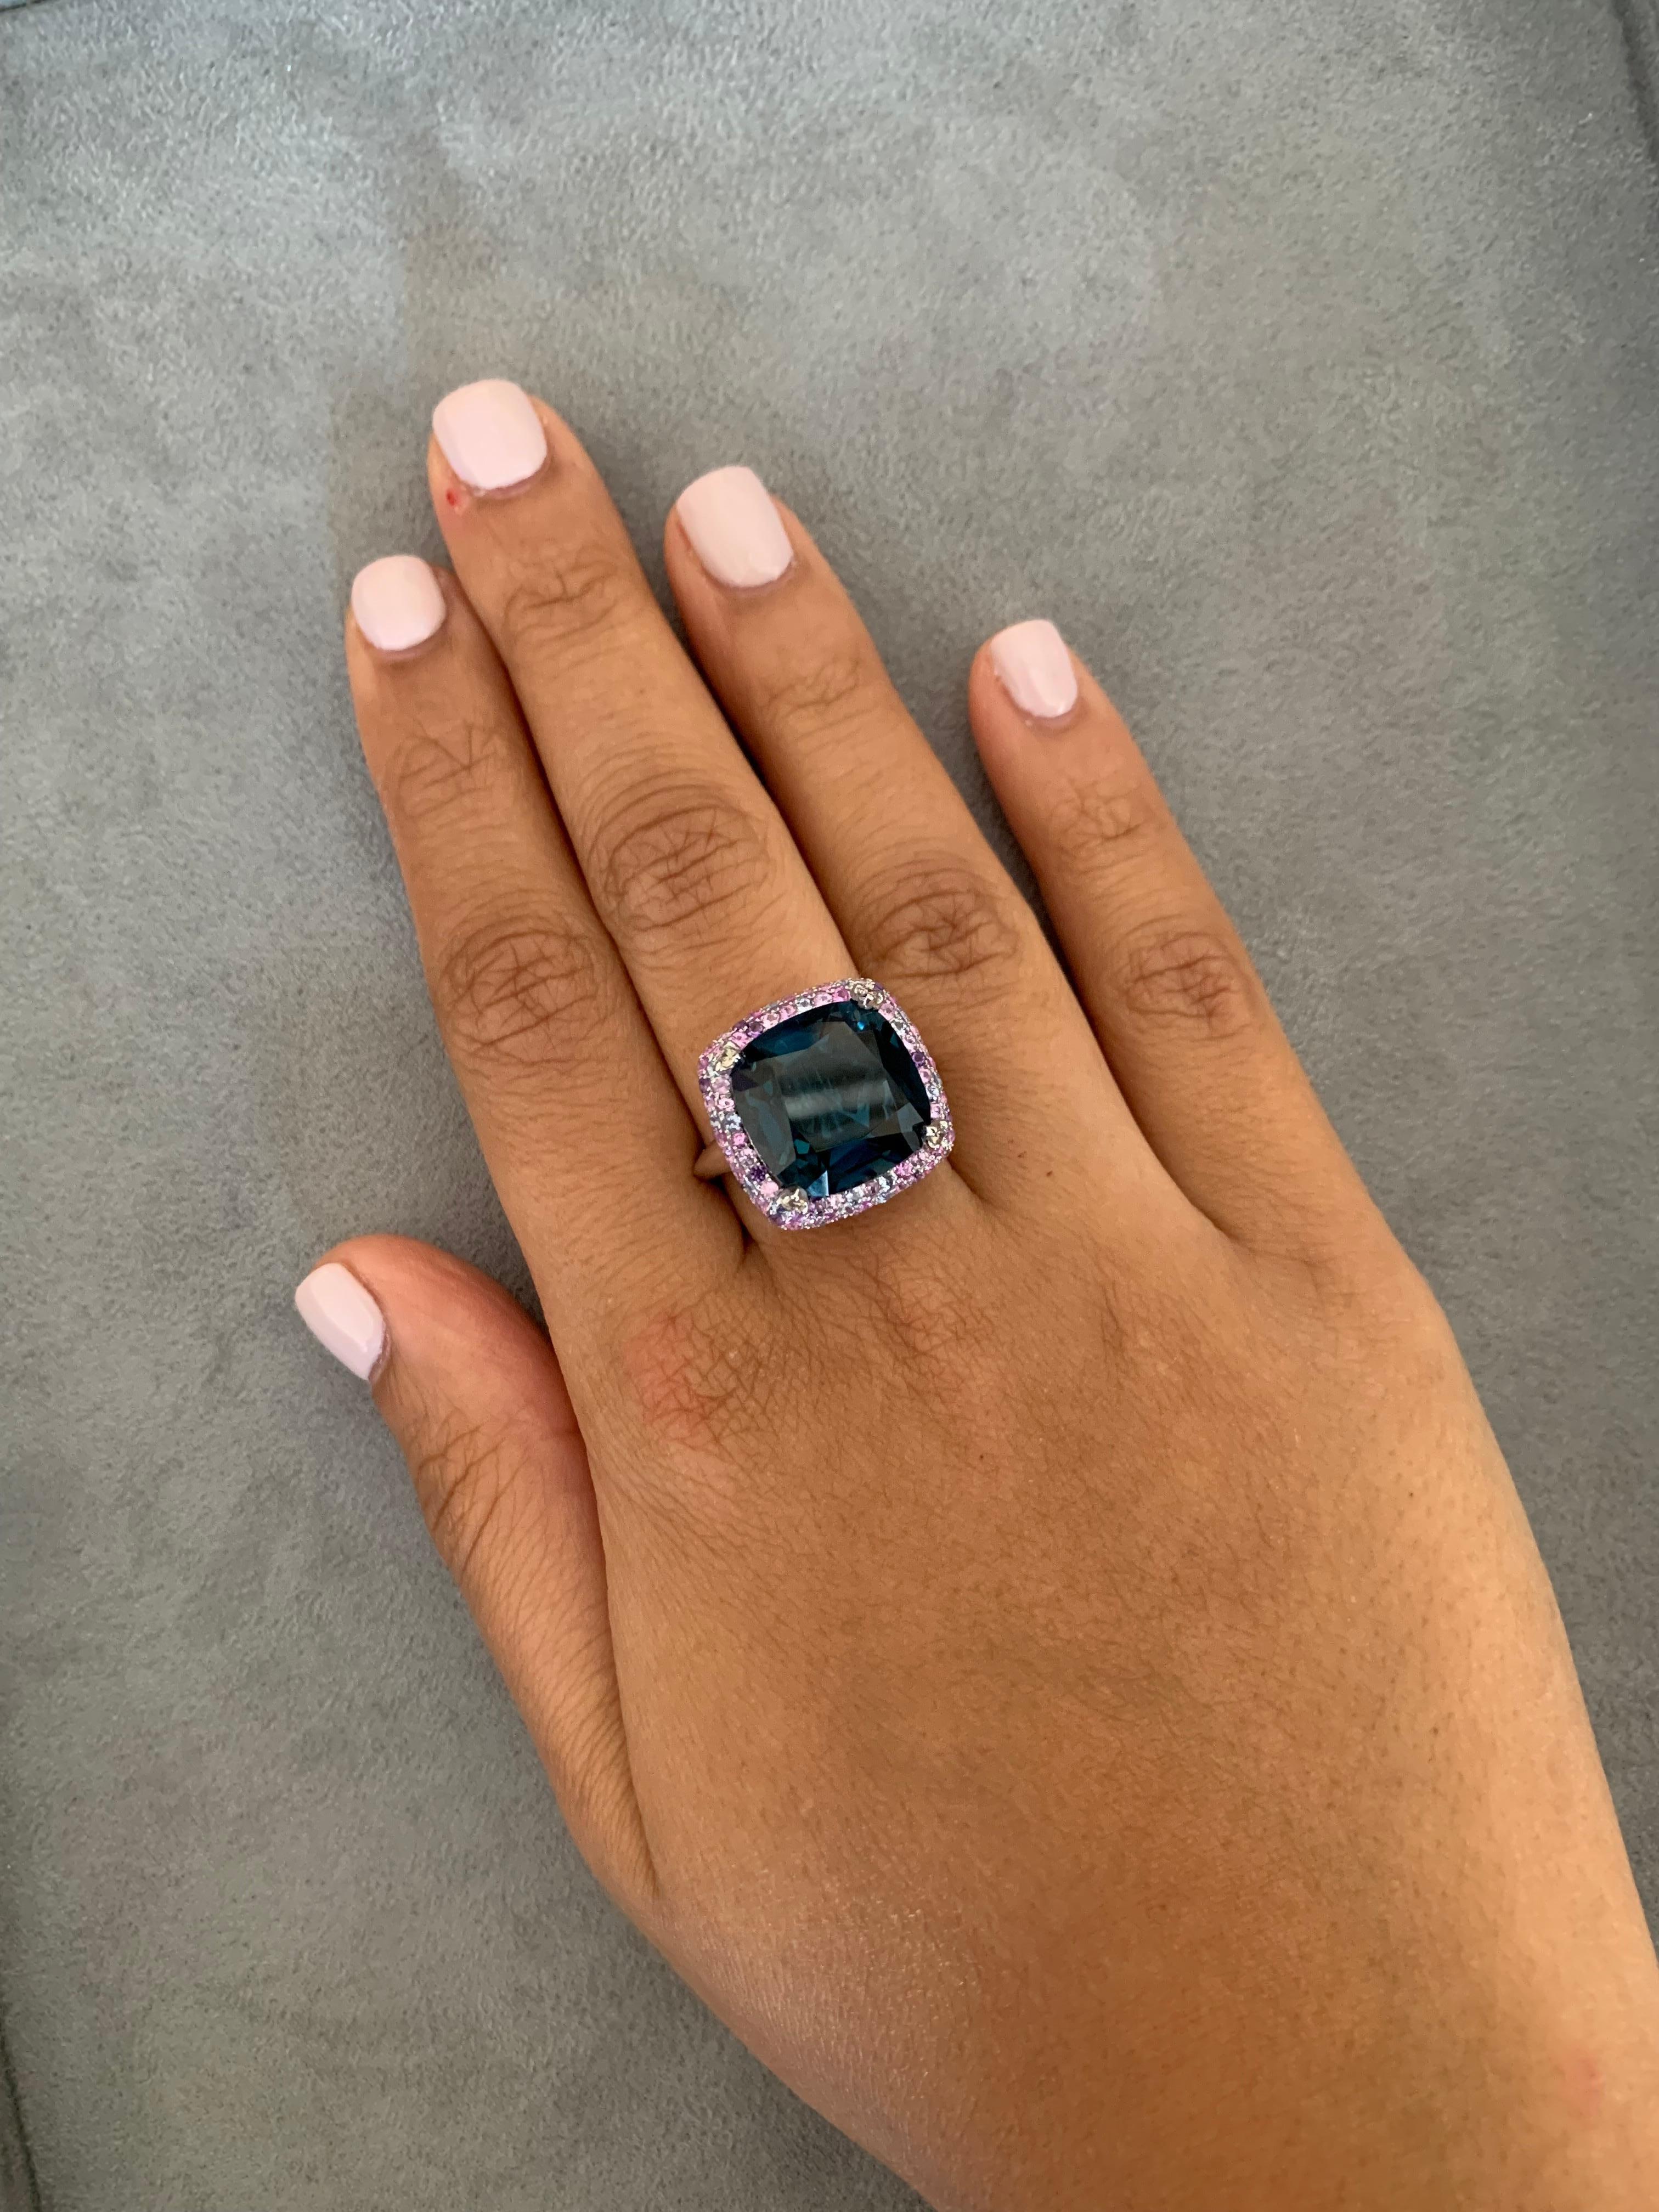 Kühnes Blautopas! Dieser leichte und einfach zu tragende Ring zeigt einen tiefblauen Topas, der mit einem mehrfarbigen Edelstein und einer Diamantfassung akzentuiert ist. Diese Schmuckstücke sind zierlich, haben aber durch die leuchtenden Edelsteine